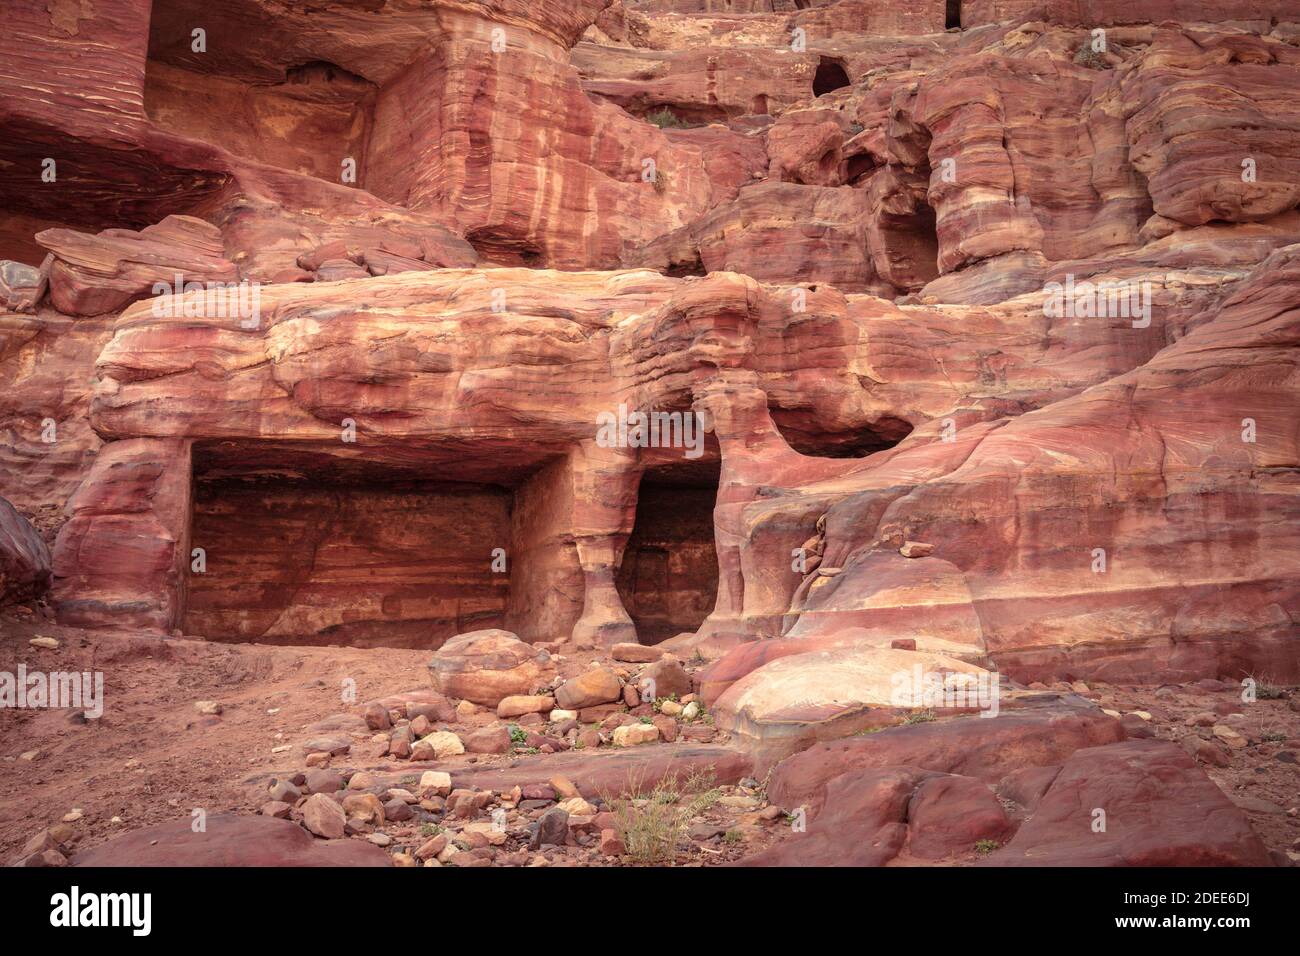 Petra, Jordanie. Maison en grès à Petra, la capitale de l'ancien Royaume nabatéen. Banque D'Images